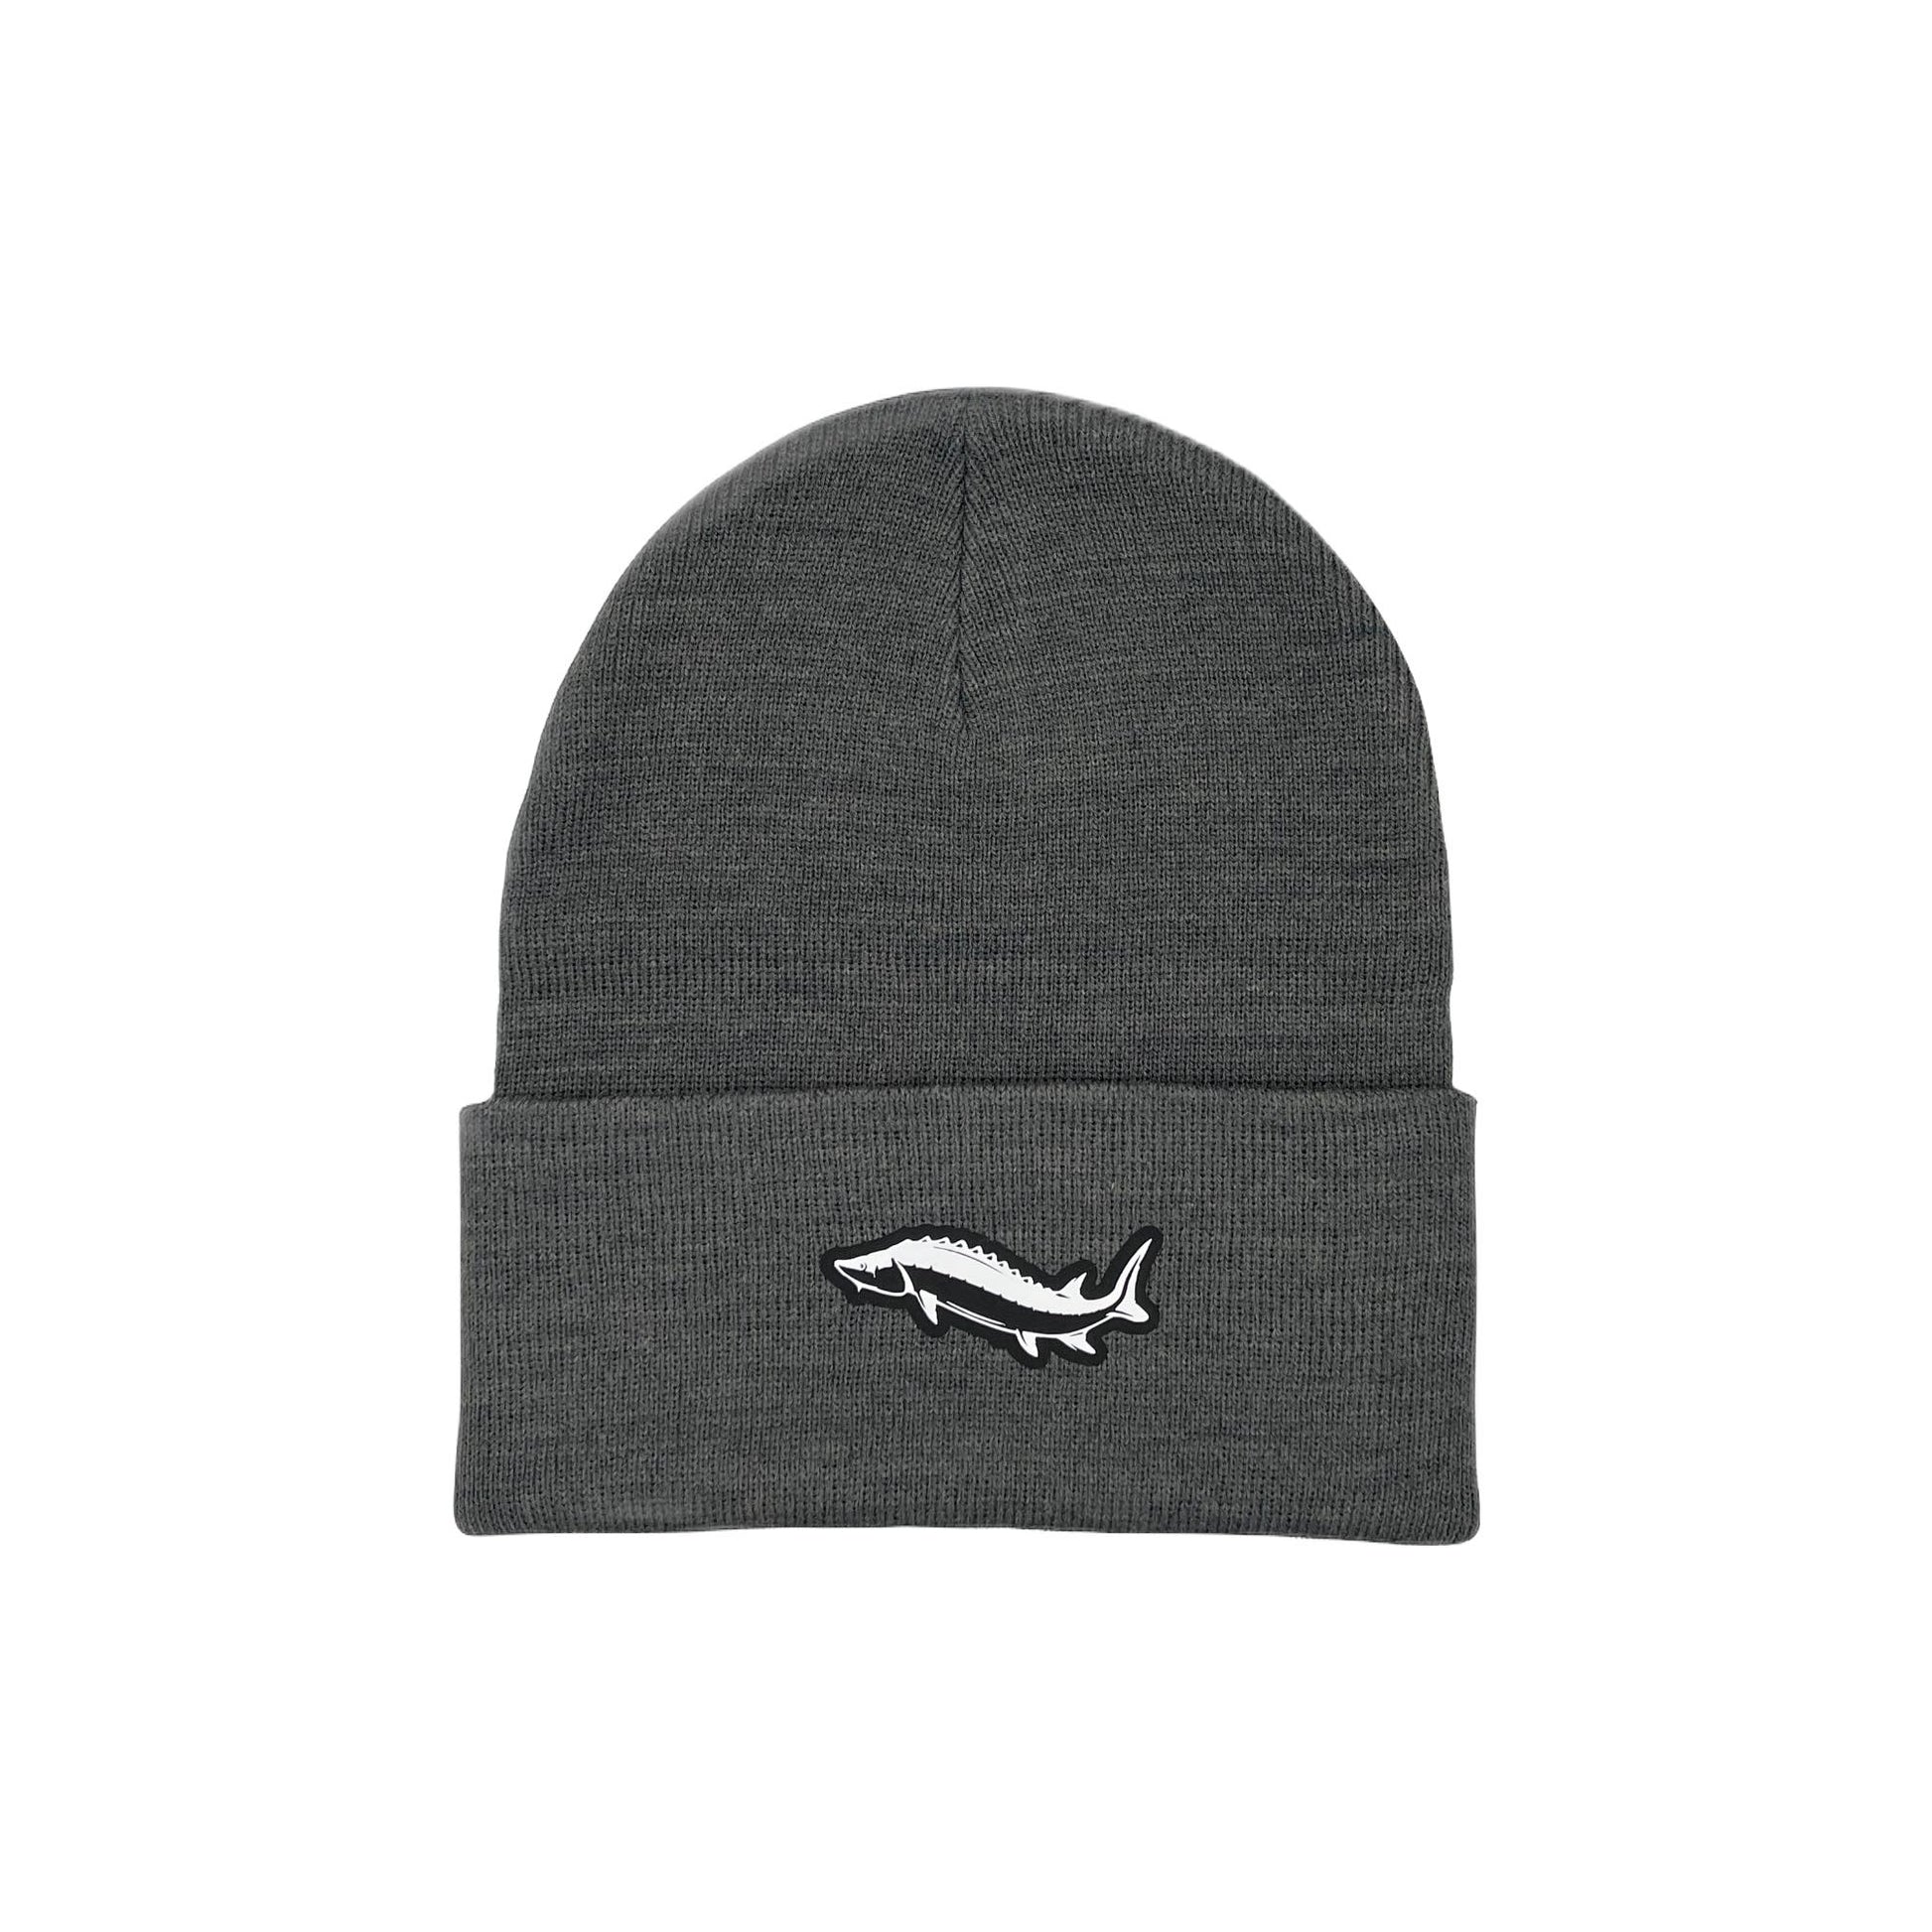 Sturgeon Dark Gray Winter Cuffed Knit Hat, Fish